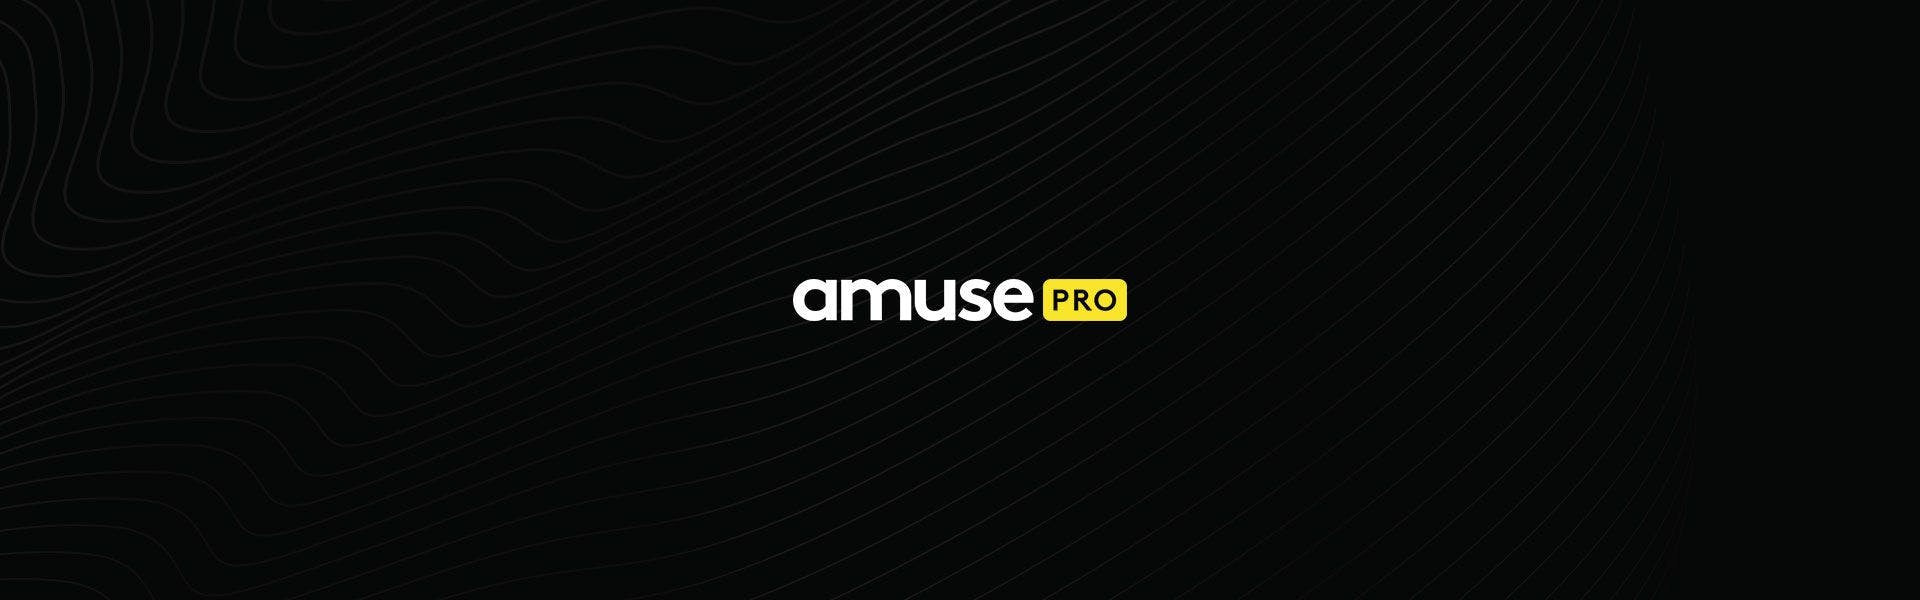 Amuse Pro logo against black background